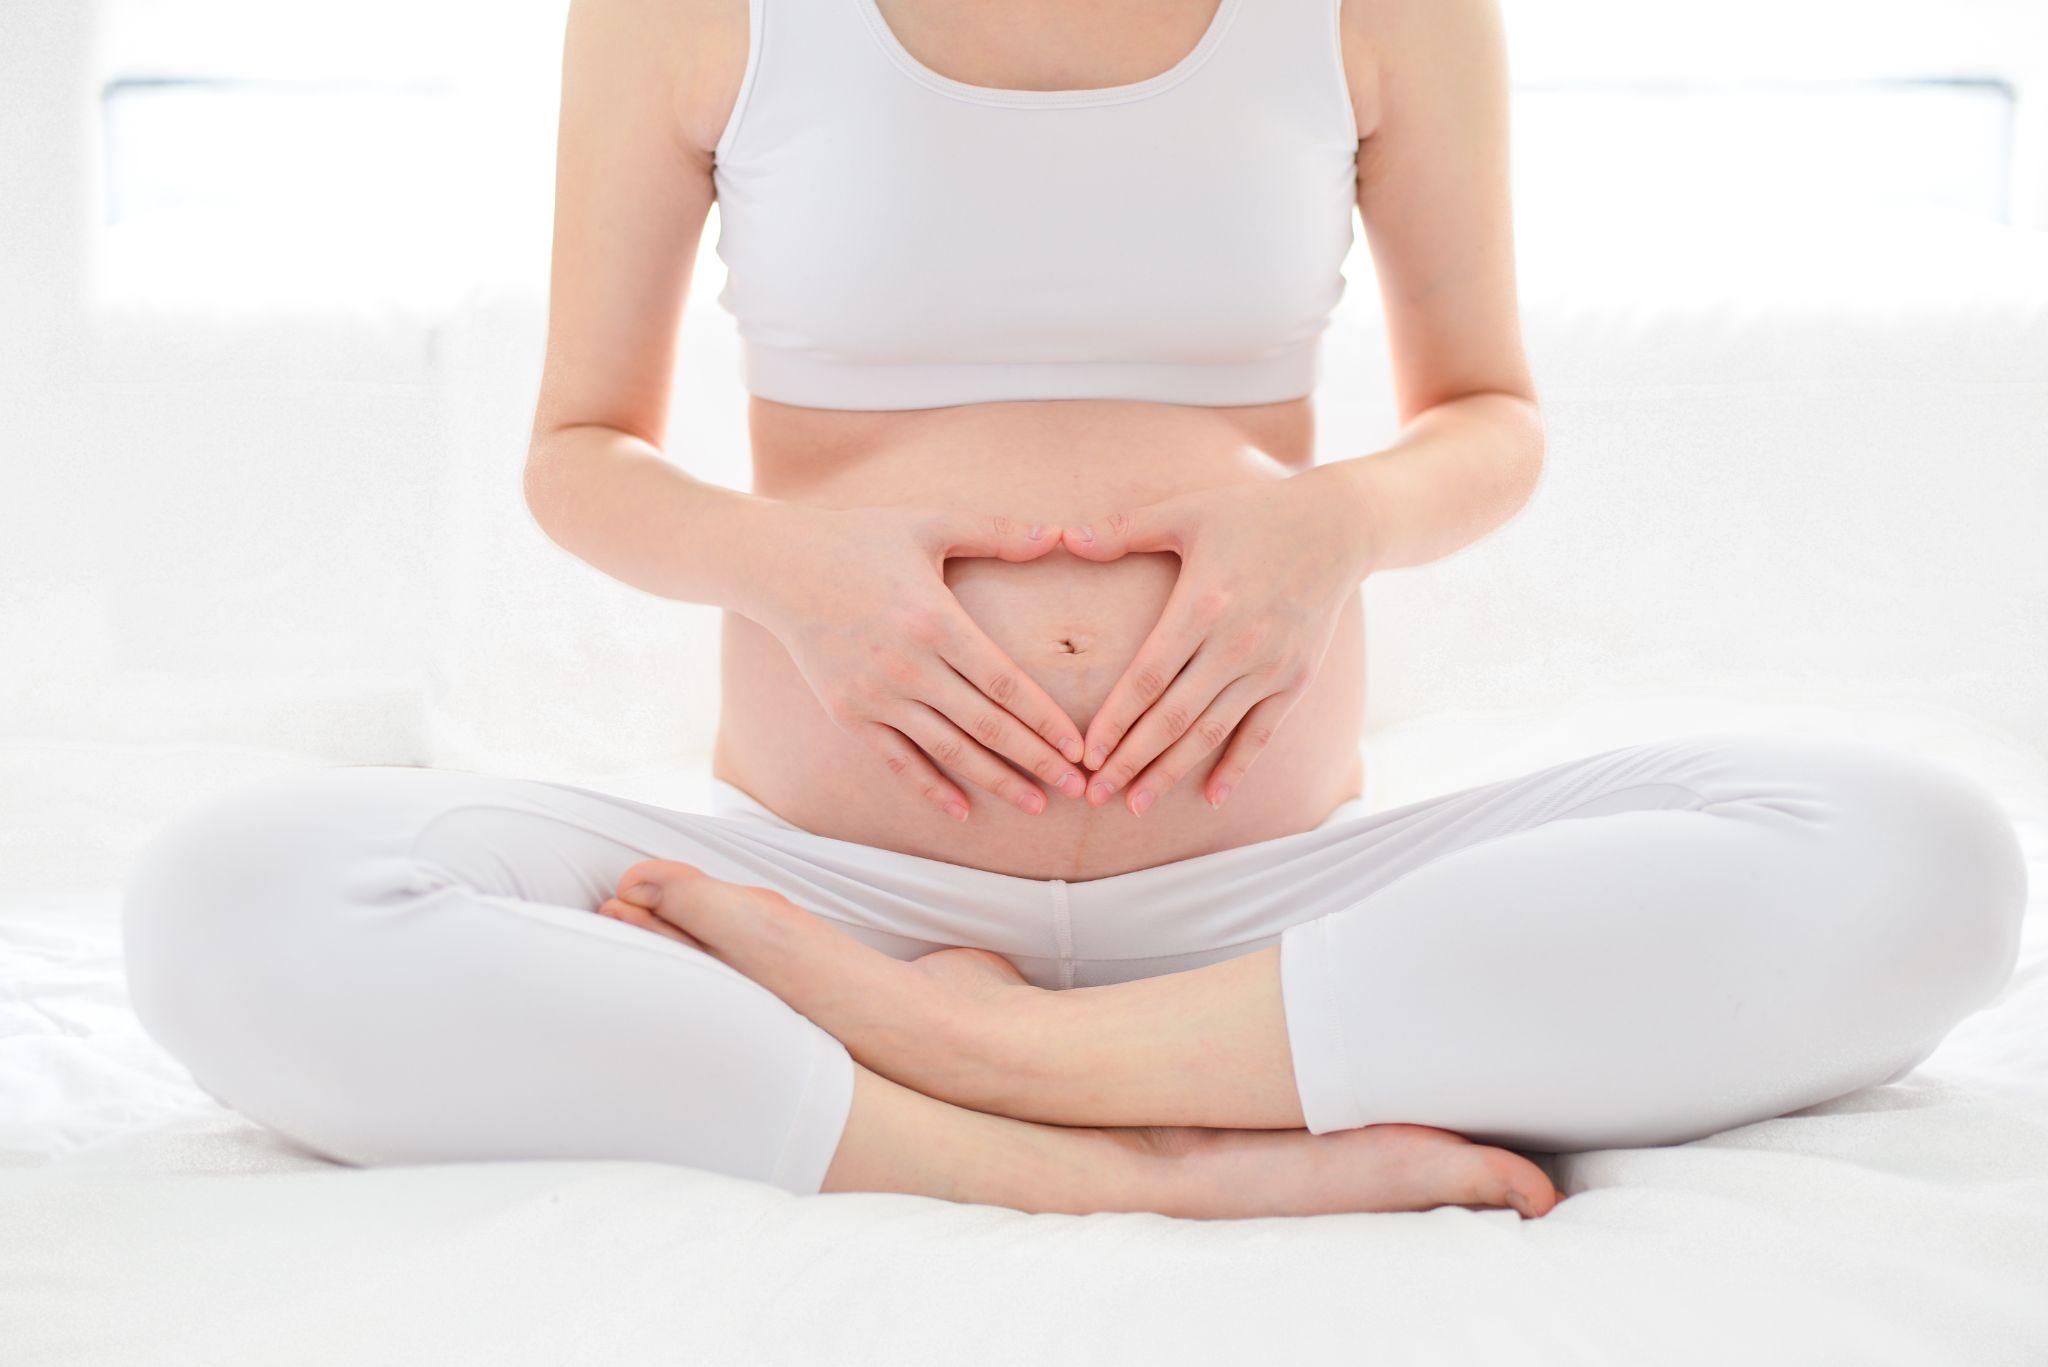 การออกกำลังกายอย่างหนัก ส่งผลต่อการตั้งครรภ์ช่วงเริ่มต้นหรือไม่